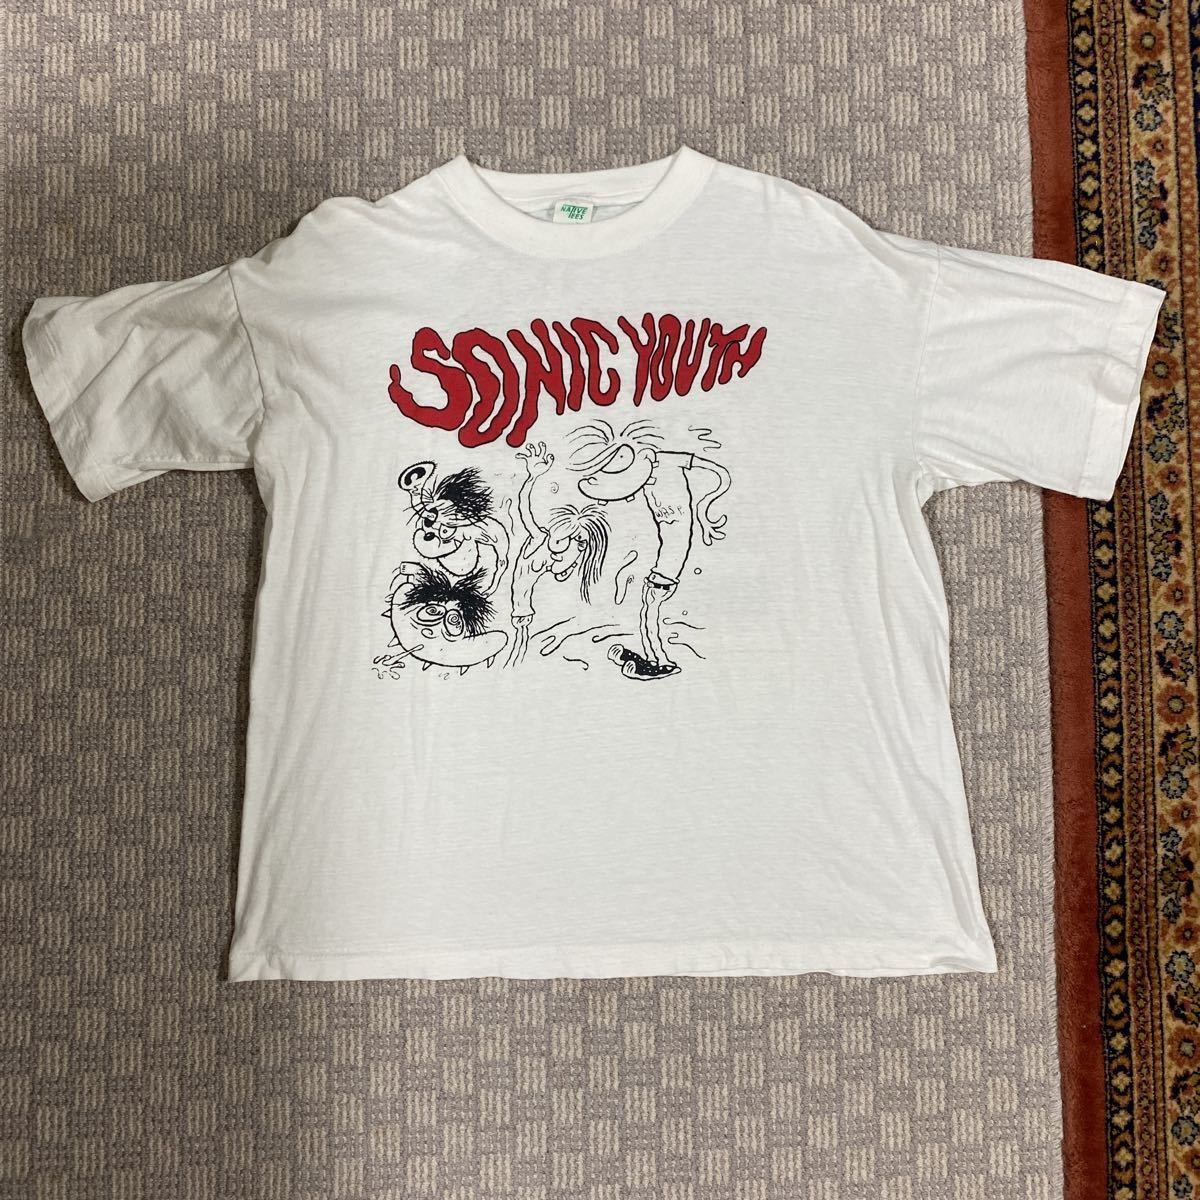 激レア バックプリントあり 95年 ツアー Tシャツ sonic youth ソニック